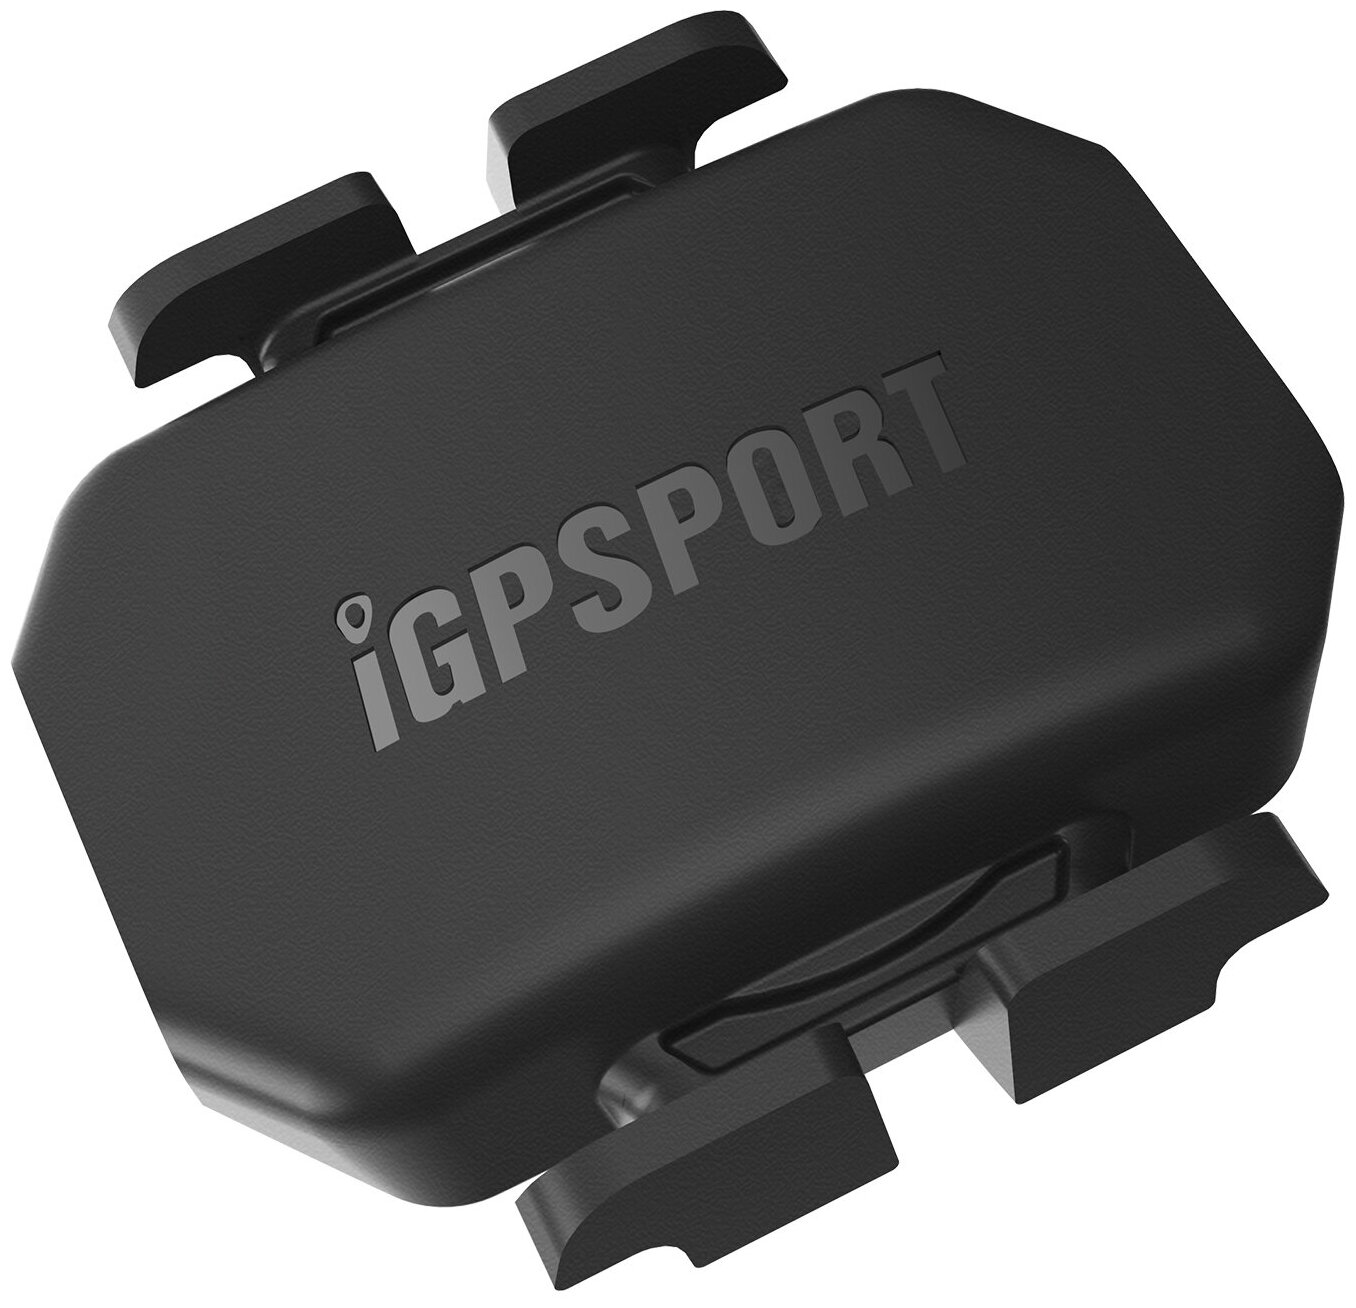 Датчик частоты вращения педалей IGPSPORT CAD70